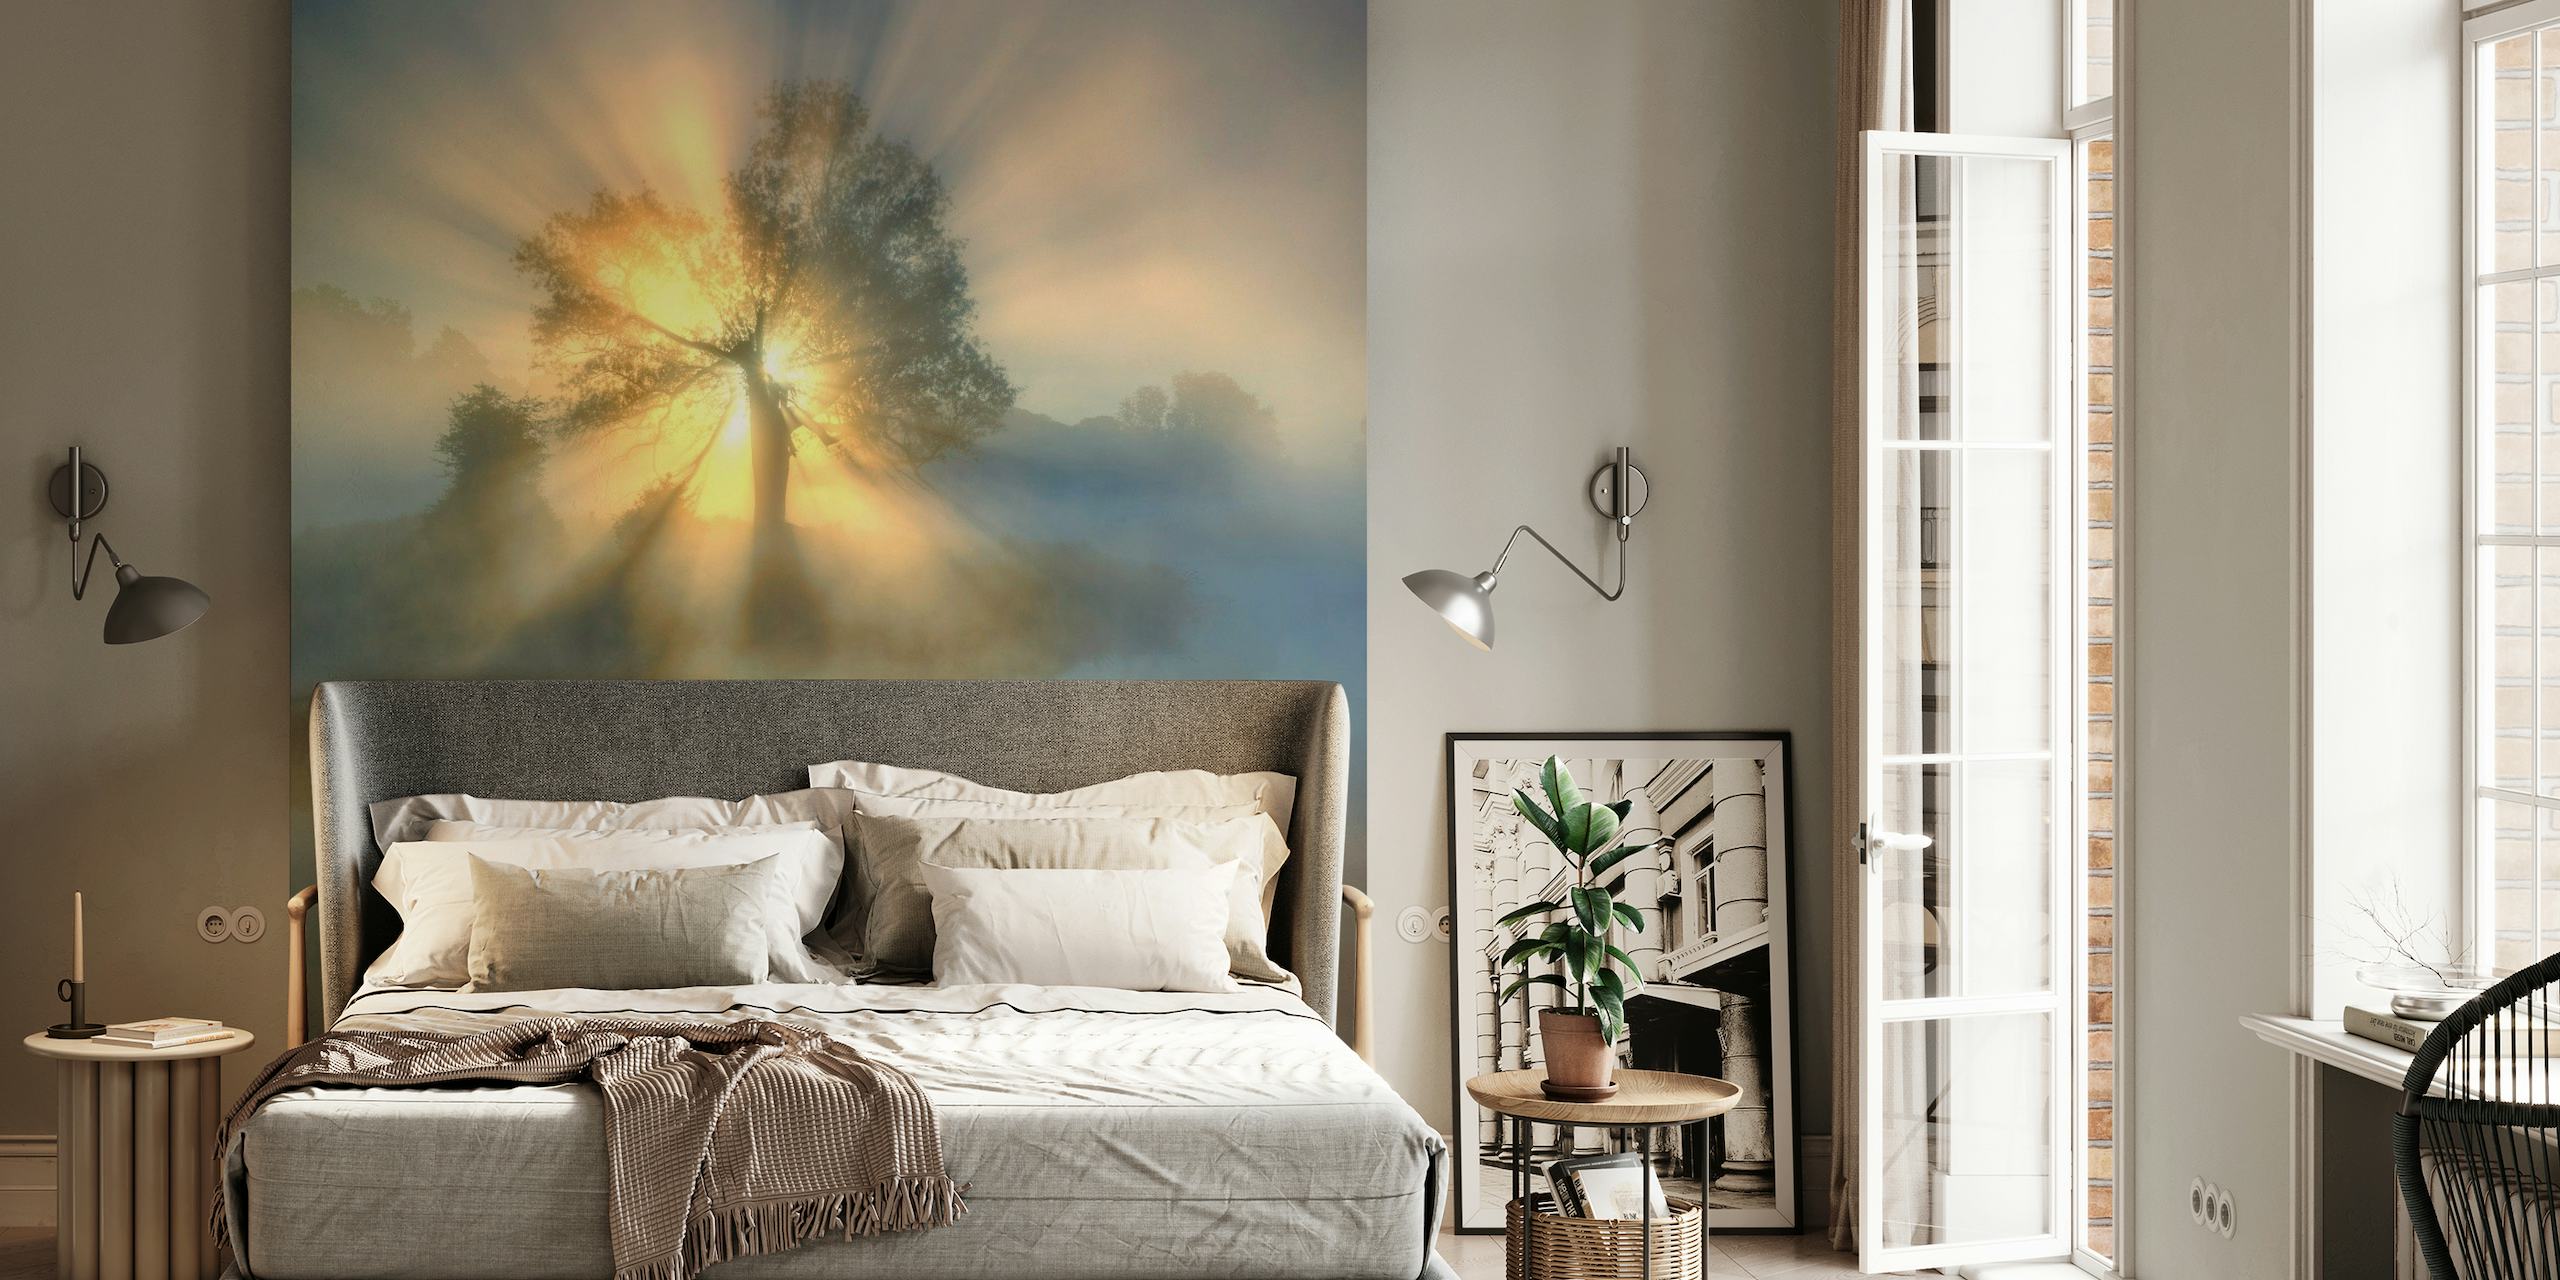 Tree of light wallpaper